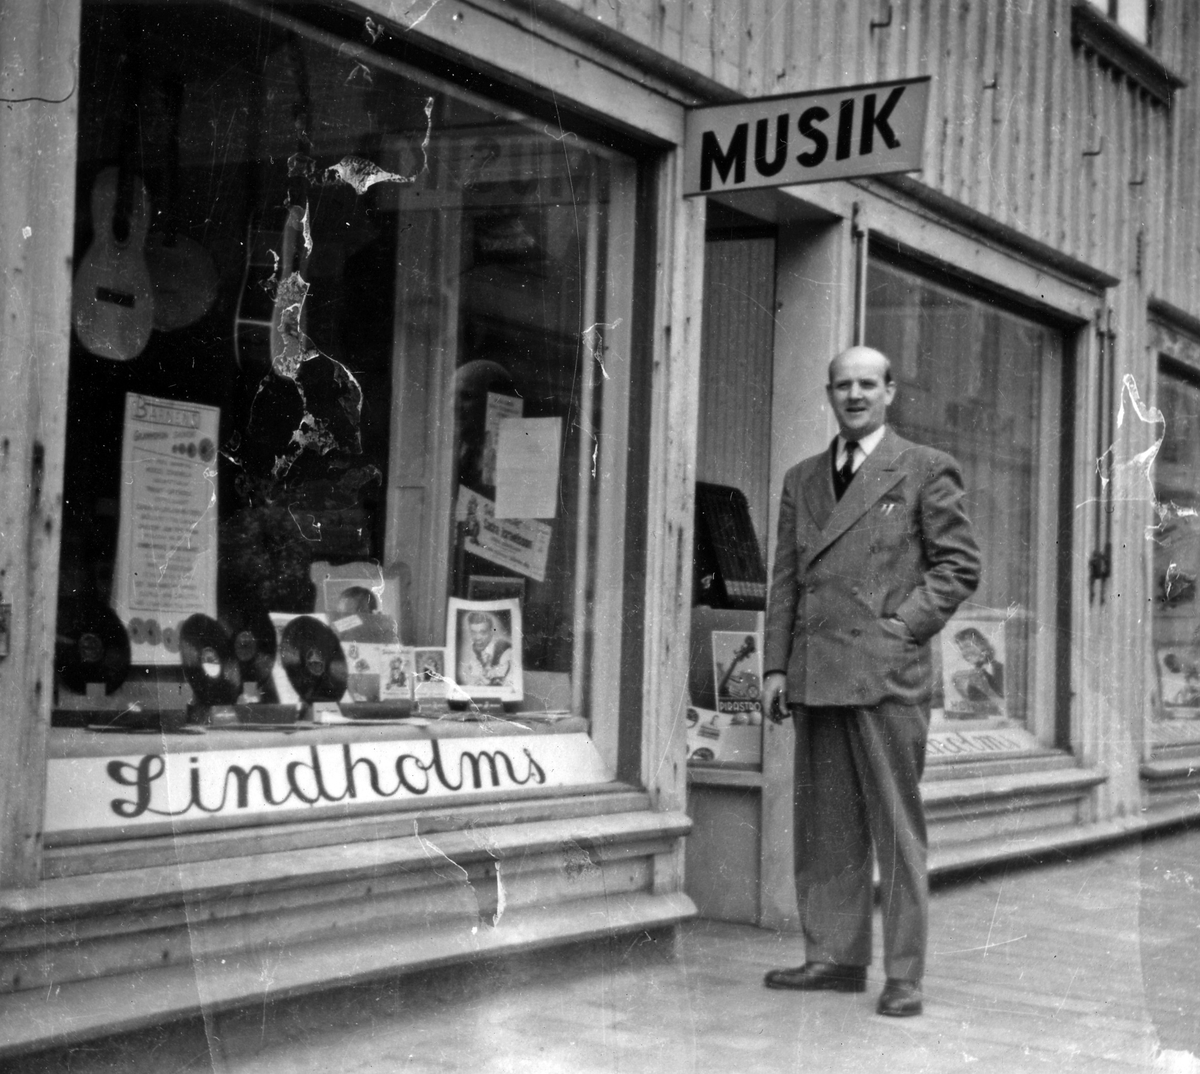 Butiksinnehavare Gunnar Lindholm står utanför sin butik, Lindholms Musikaffär. I skyltfönstret syns både stenkakor och musikinstrument.
Kvarteret Storken 5, Norra Strömgatan.